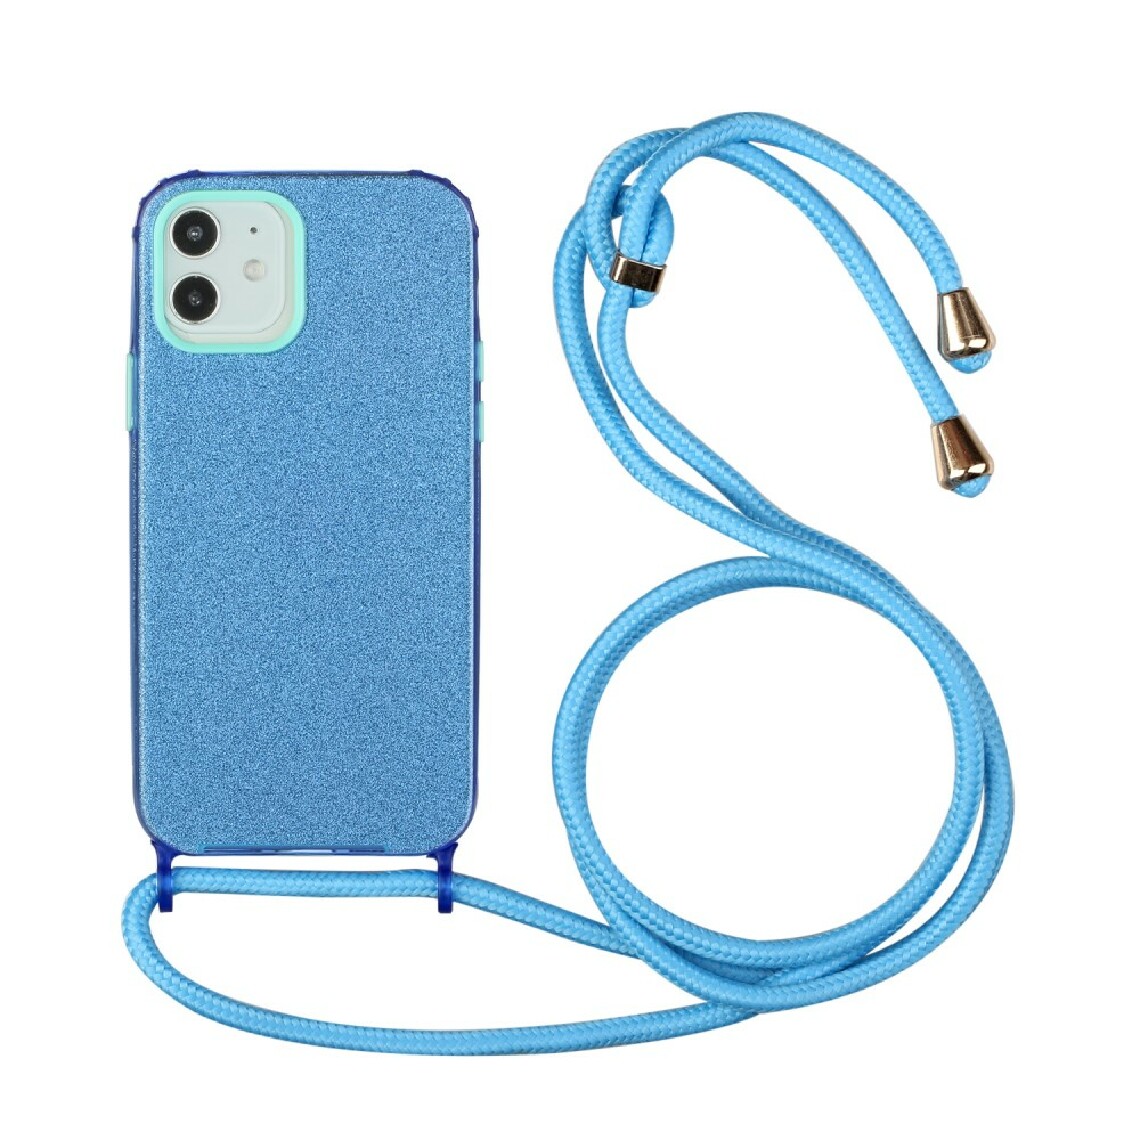 Other - Coque en TPU conception de poudre de paillettes à fixation facile souple avec sangle multifonction bleu pour votre Apple iPhone 12 mini - Coque, étui smartphone